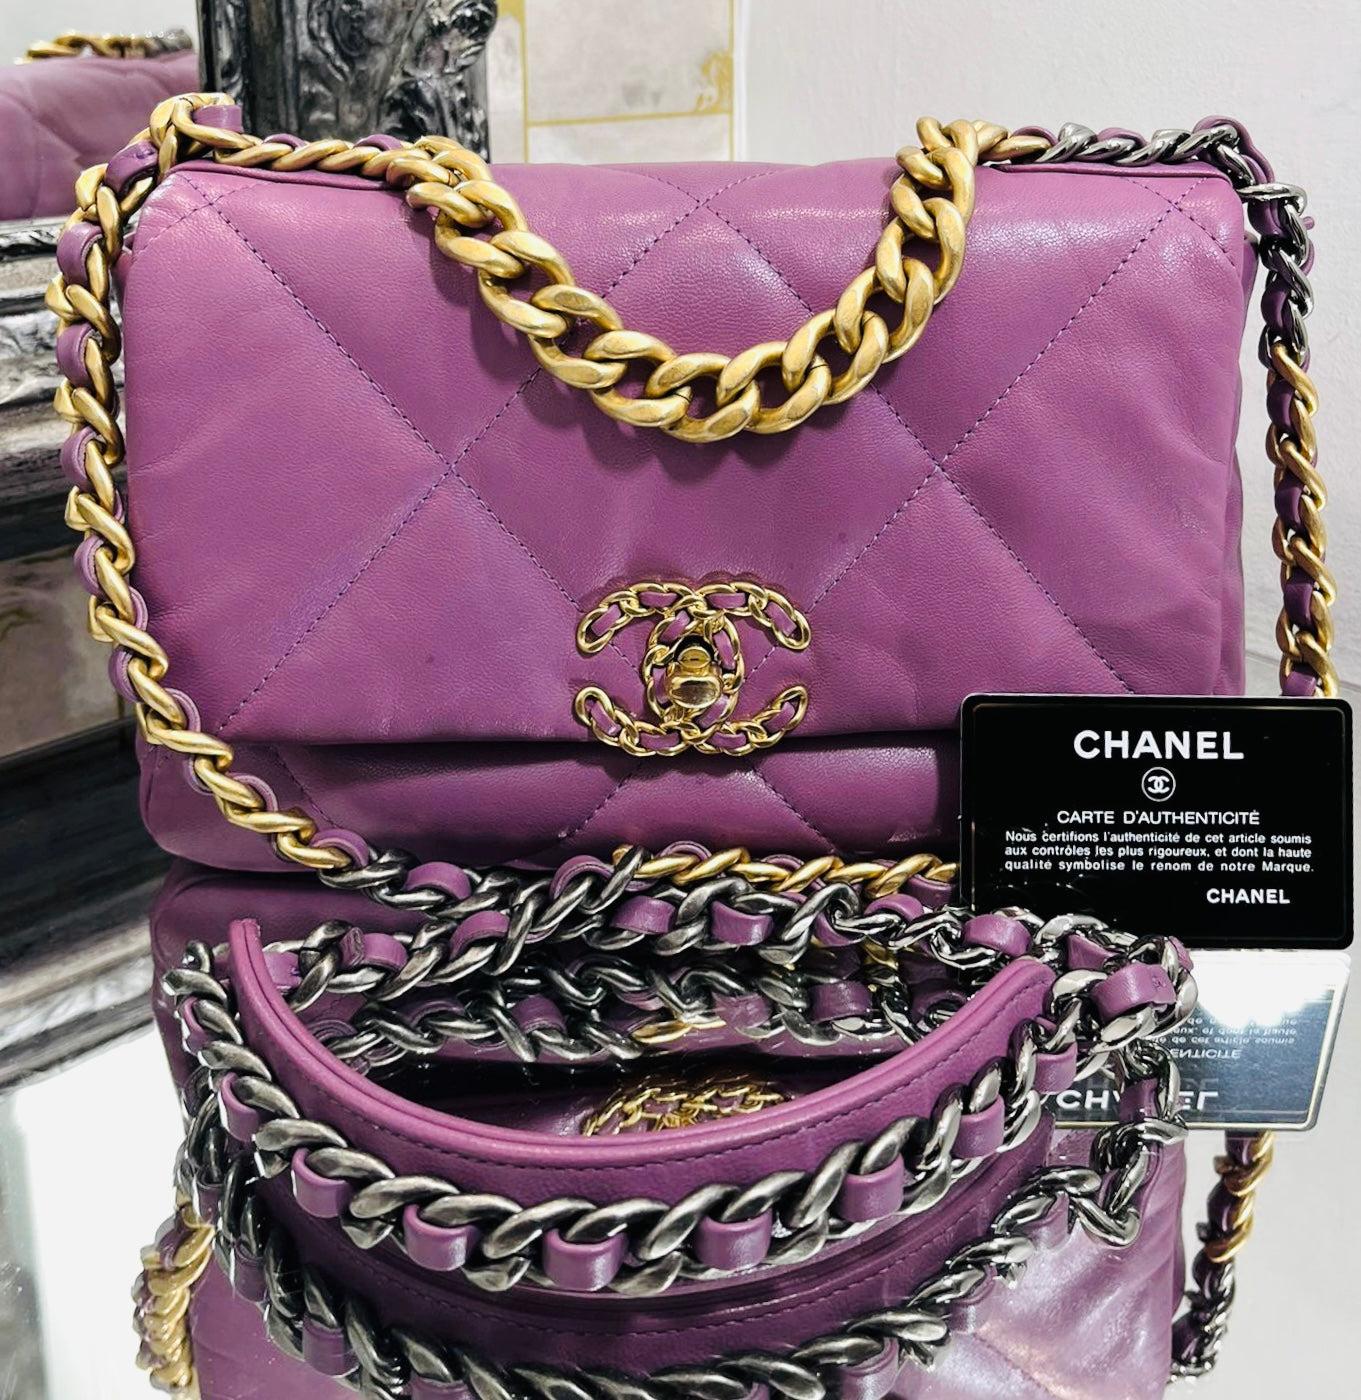 Chanel 19 - Sac à rabat en cuir

Sac en cuir souple violet avec bandoulière matelassée en diamant. Il se ferme à l'aide du cadenas 